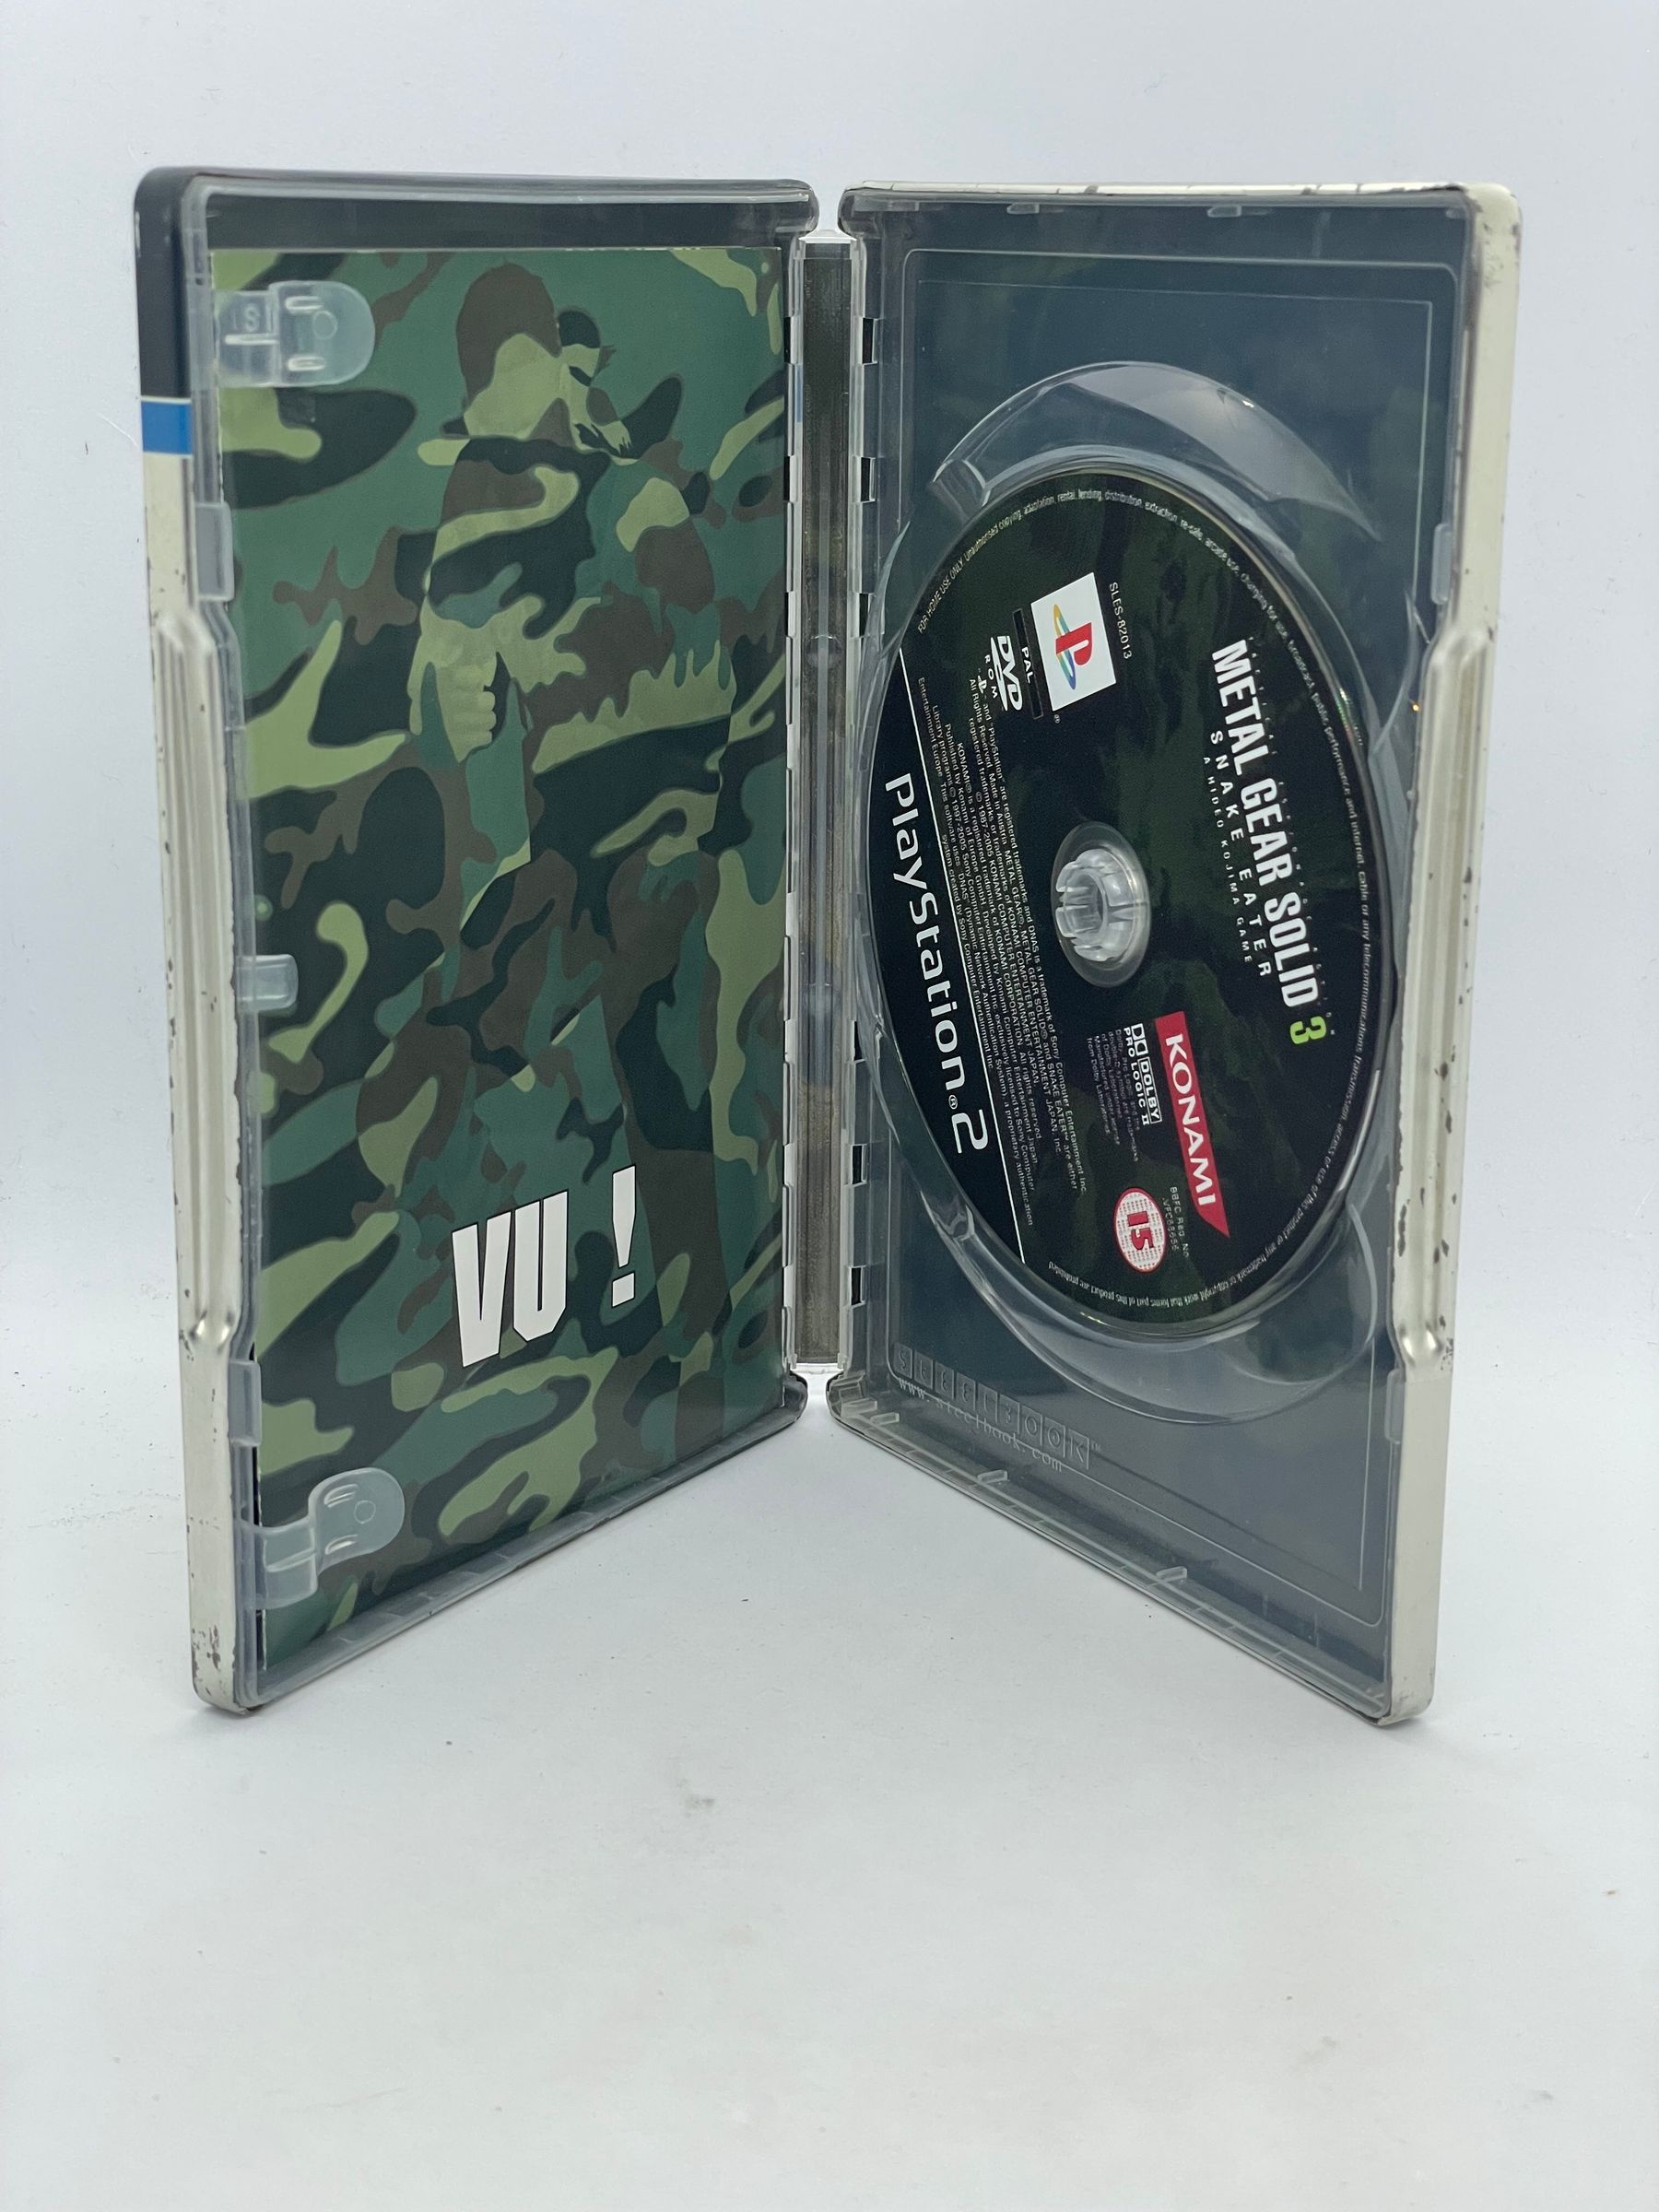 Metal Gear Solid 3 Snake Eater Steelbook PS2